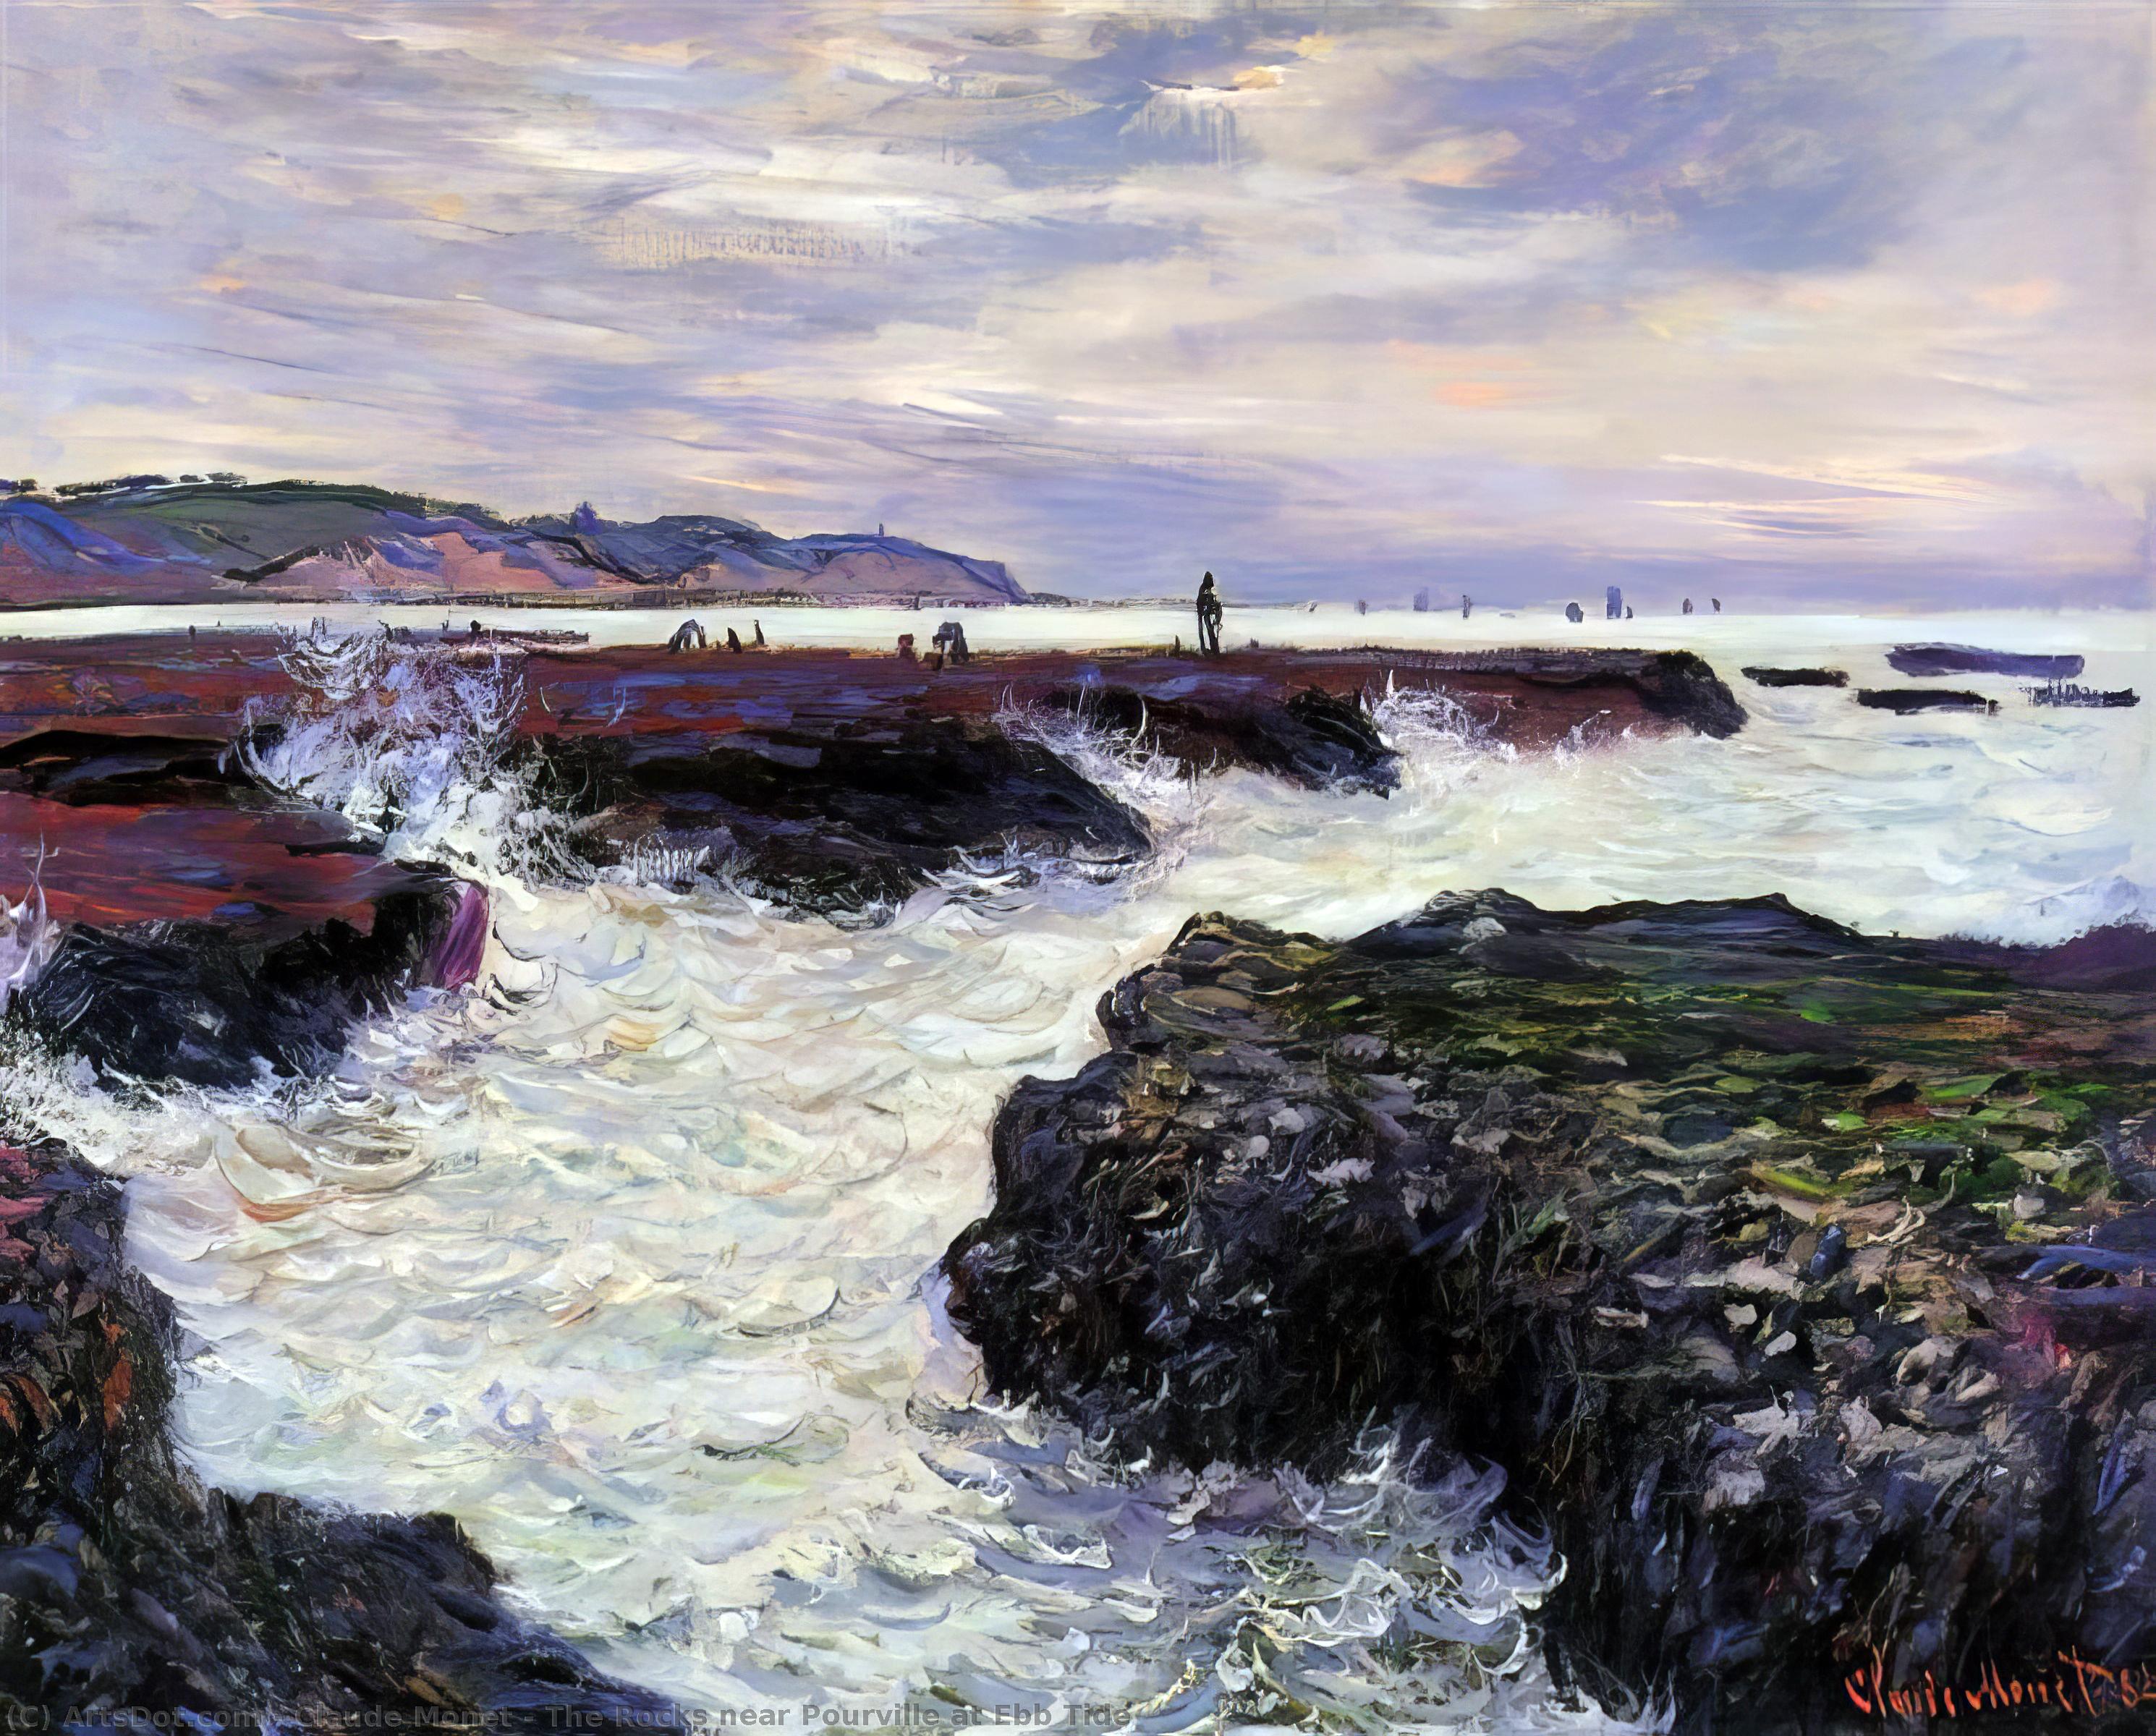 Wikoo.org - موسوعة الفنون الجميلة - اللوحة، العمل الفني Claude Monet - The Rocks near Pourville at Ebb Tide